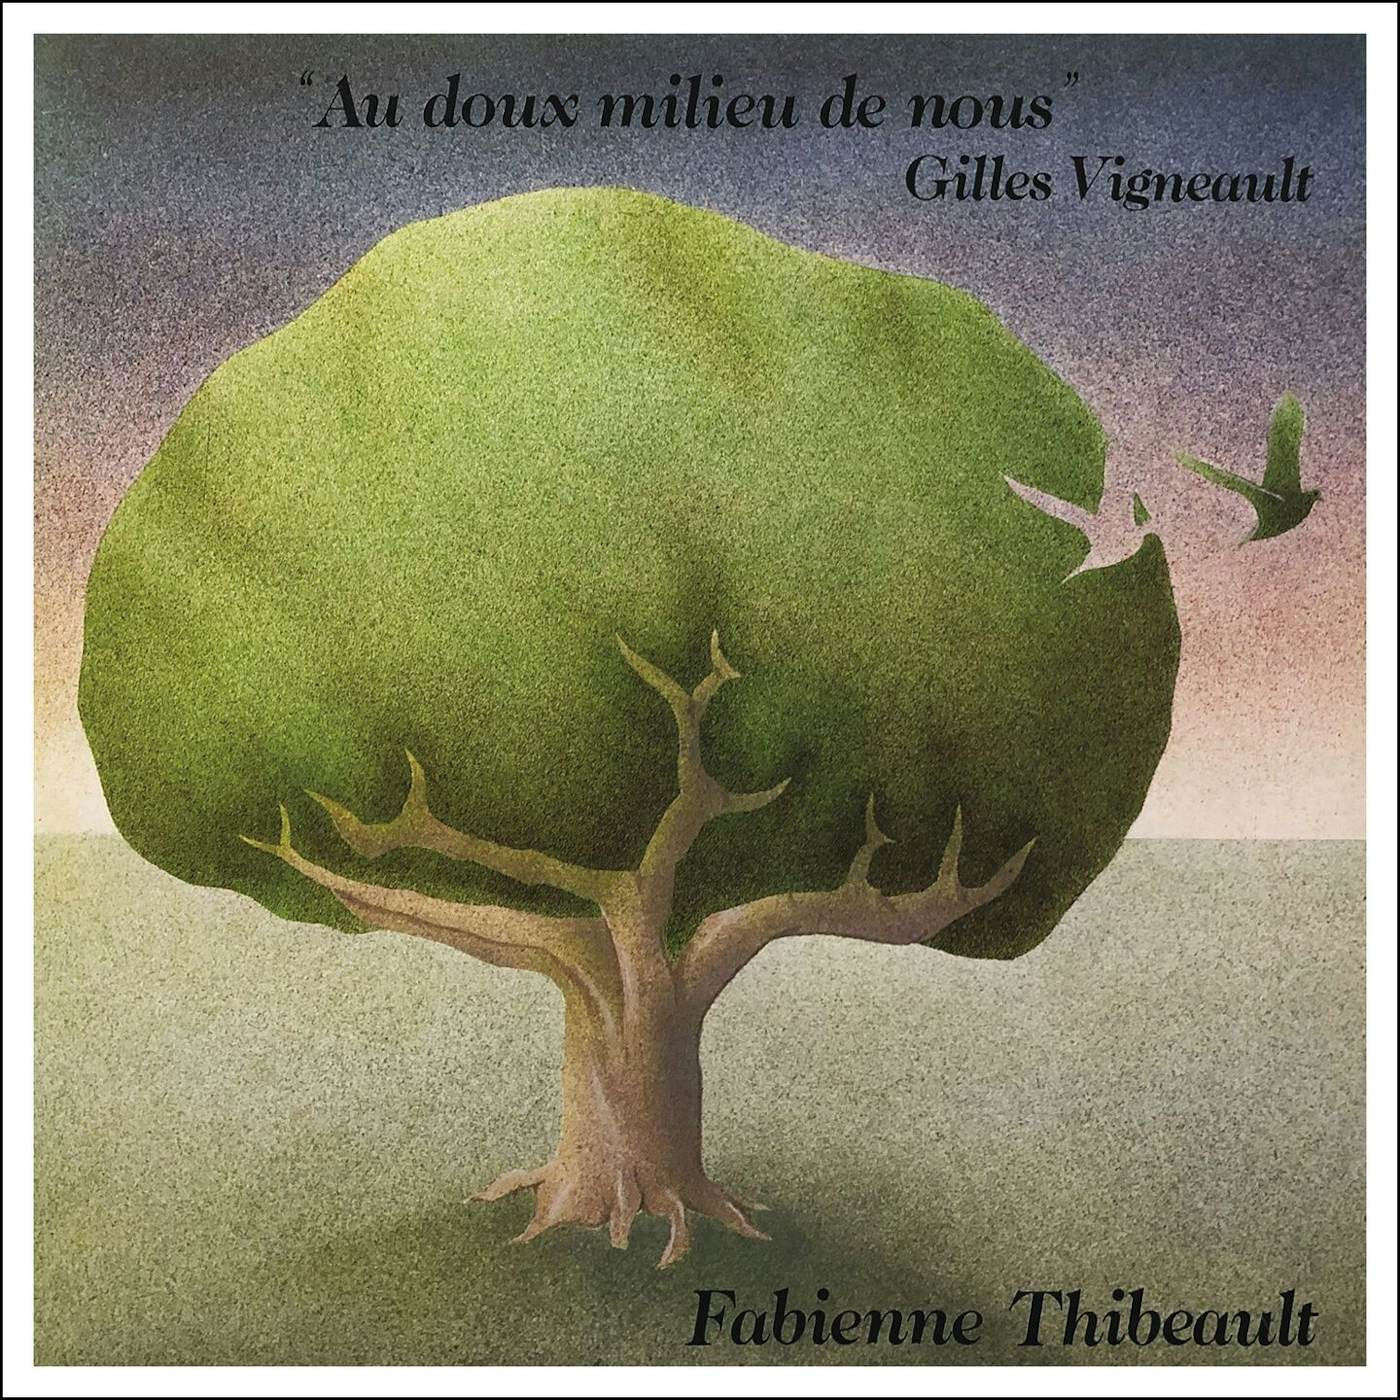 Fabienne Thibeault / Au doux milieu de nous - CD